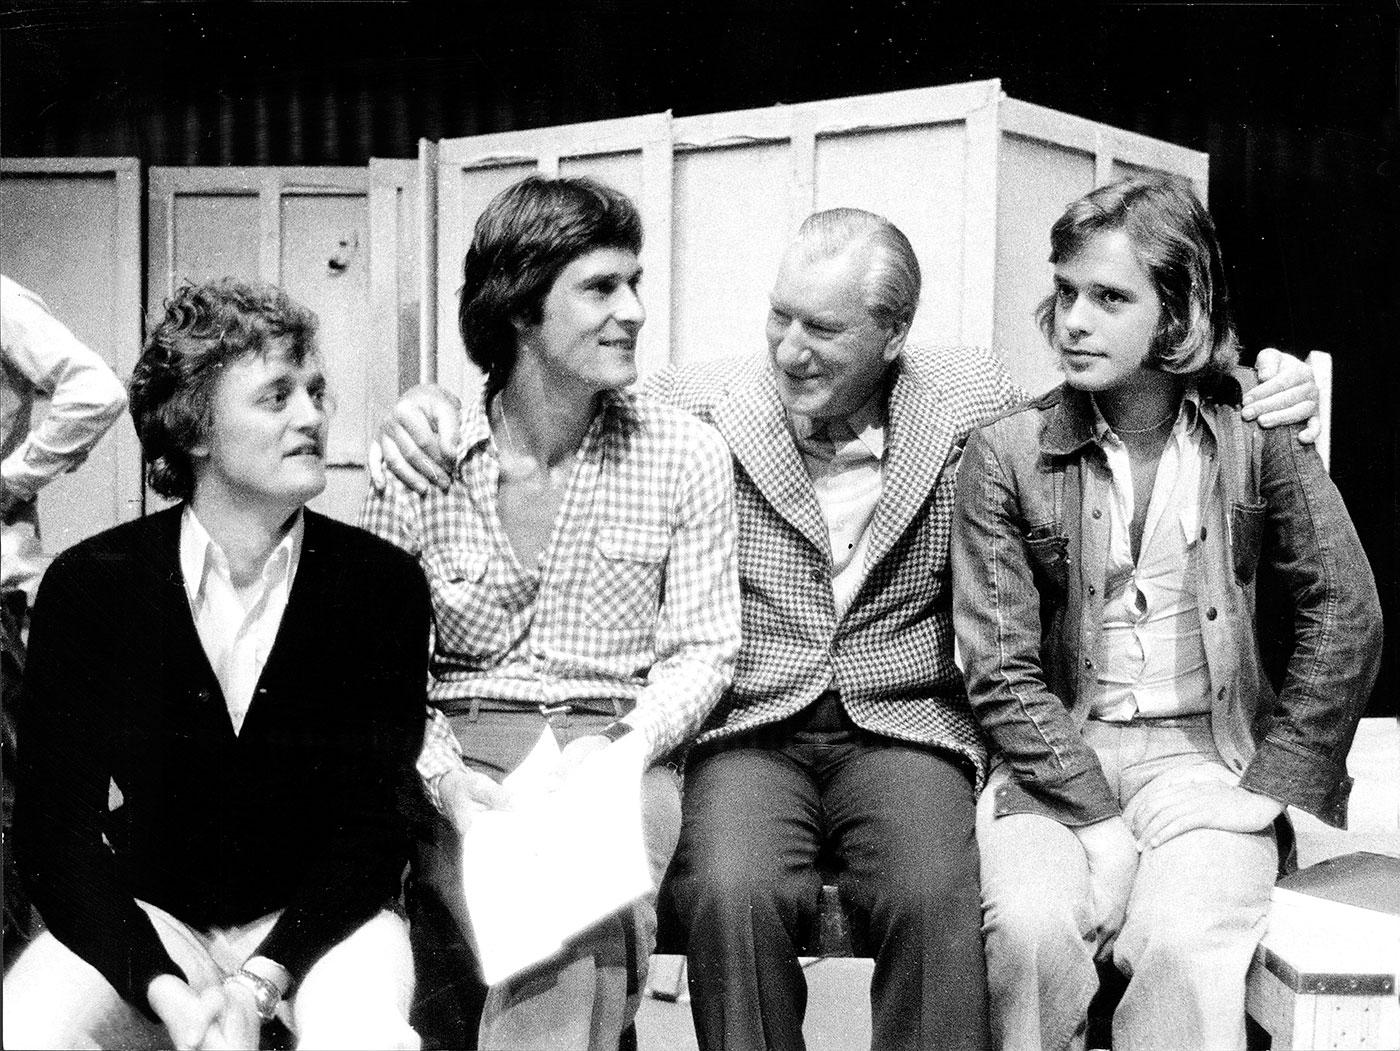 1972: En veteran och tre debutanter på Dramatens scen. Från vänster Jan Jönsson, skådespelare. Tomas Pontén, skådespelare, Sigge Fürst, skådespelare, sångare, underhållare och programledare Sverige och Per Mattsson, skådespelare.